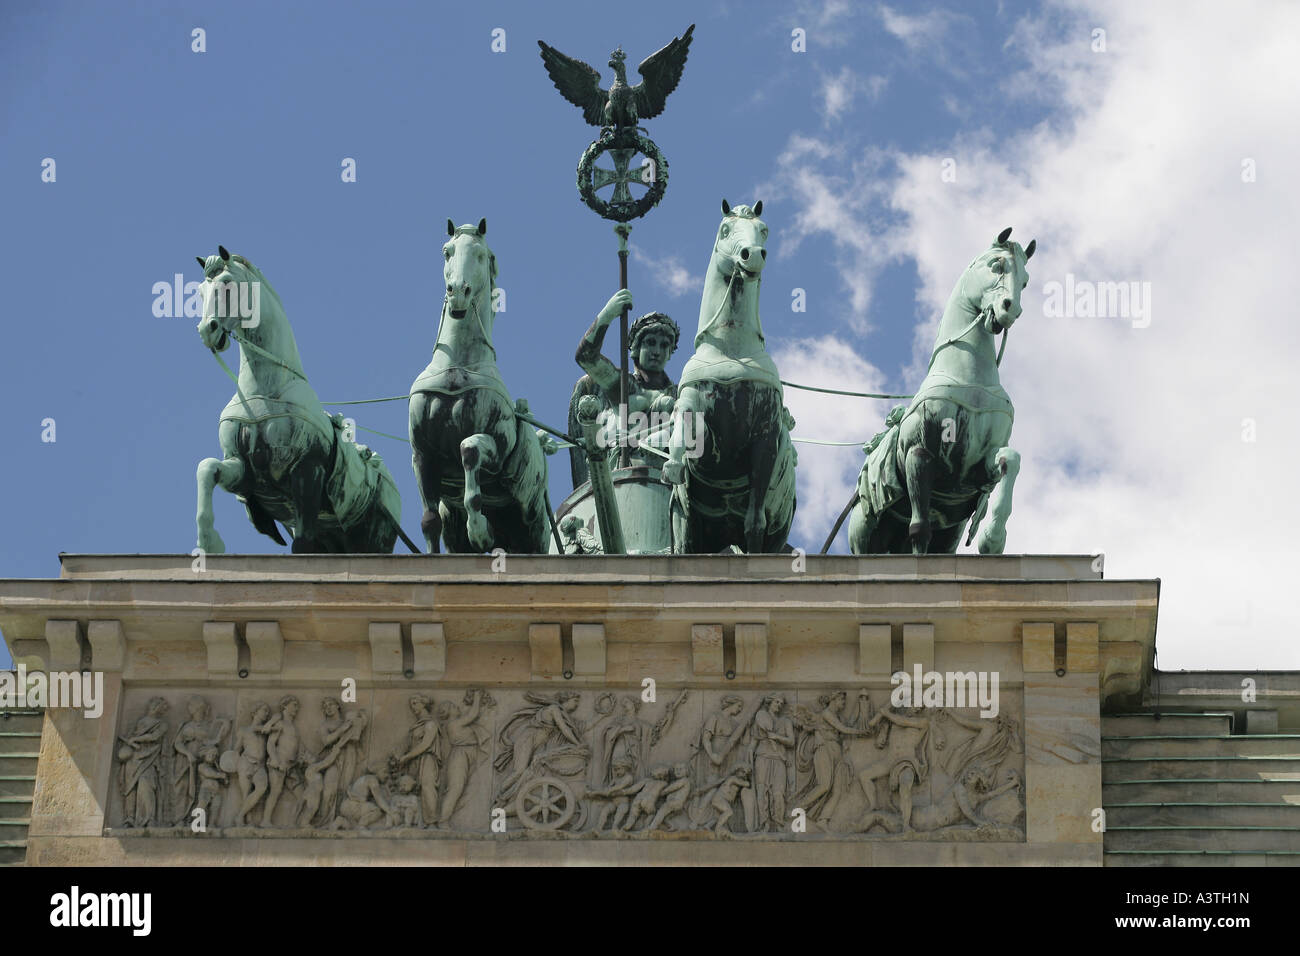 The Quadriga above the Brandenburger Tor in Berlin, Germany Stock Photo